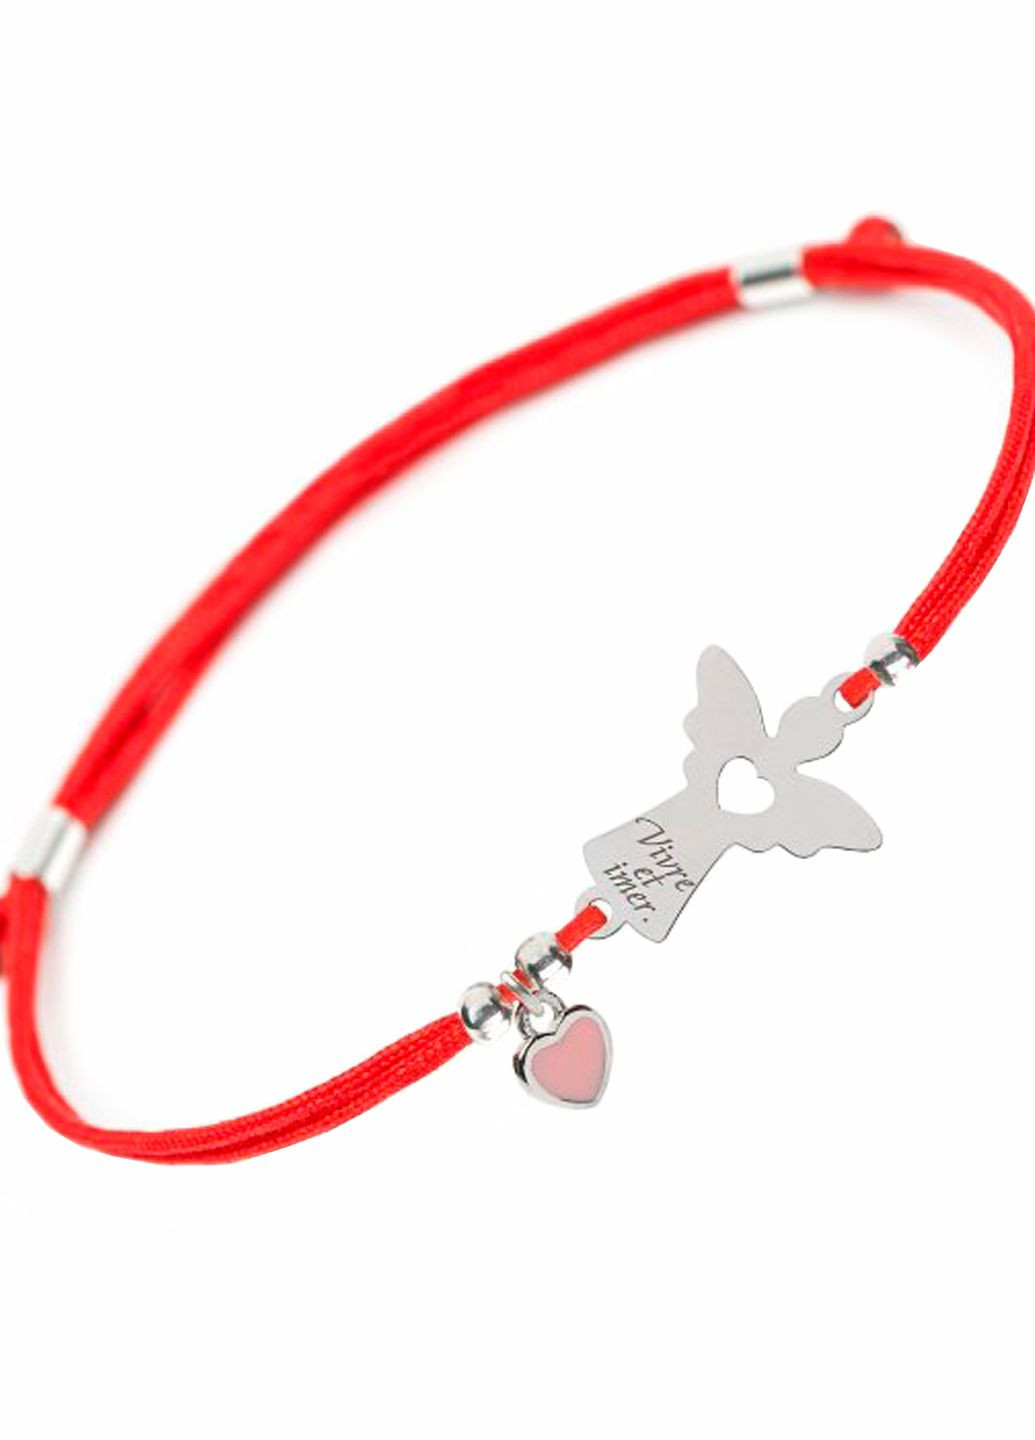 Срібний браслет червоній нитці Ангел з крилами та написом "Live and love Angel" Family Tree Jewelry Line (266042173)